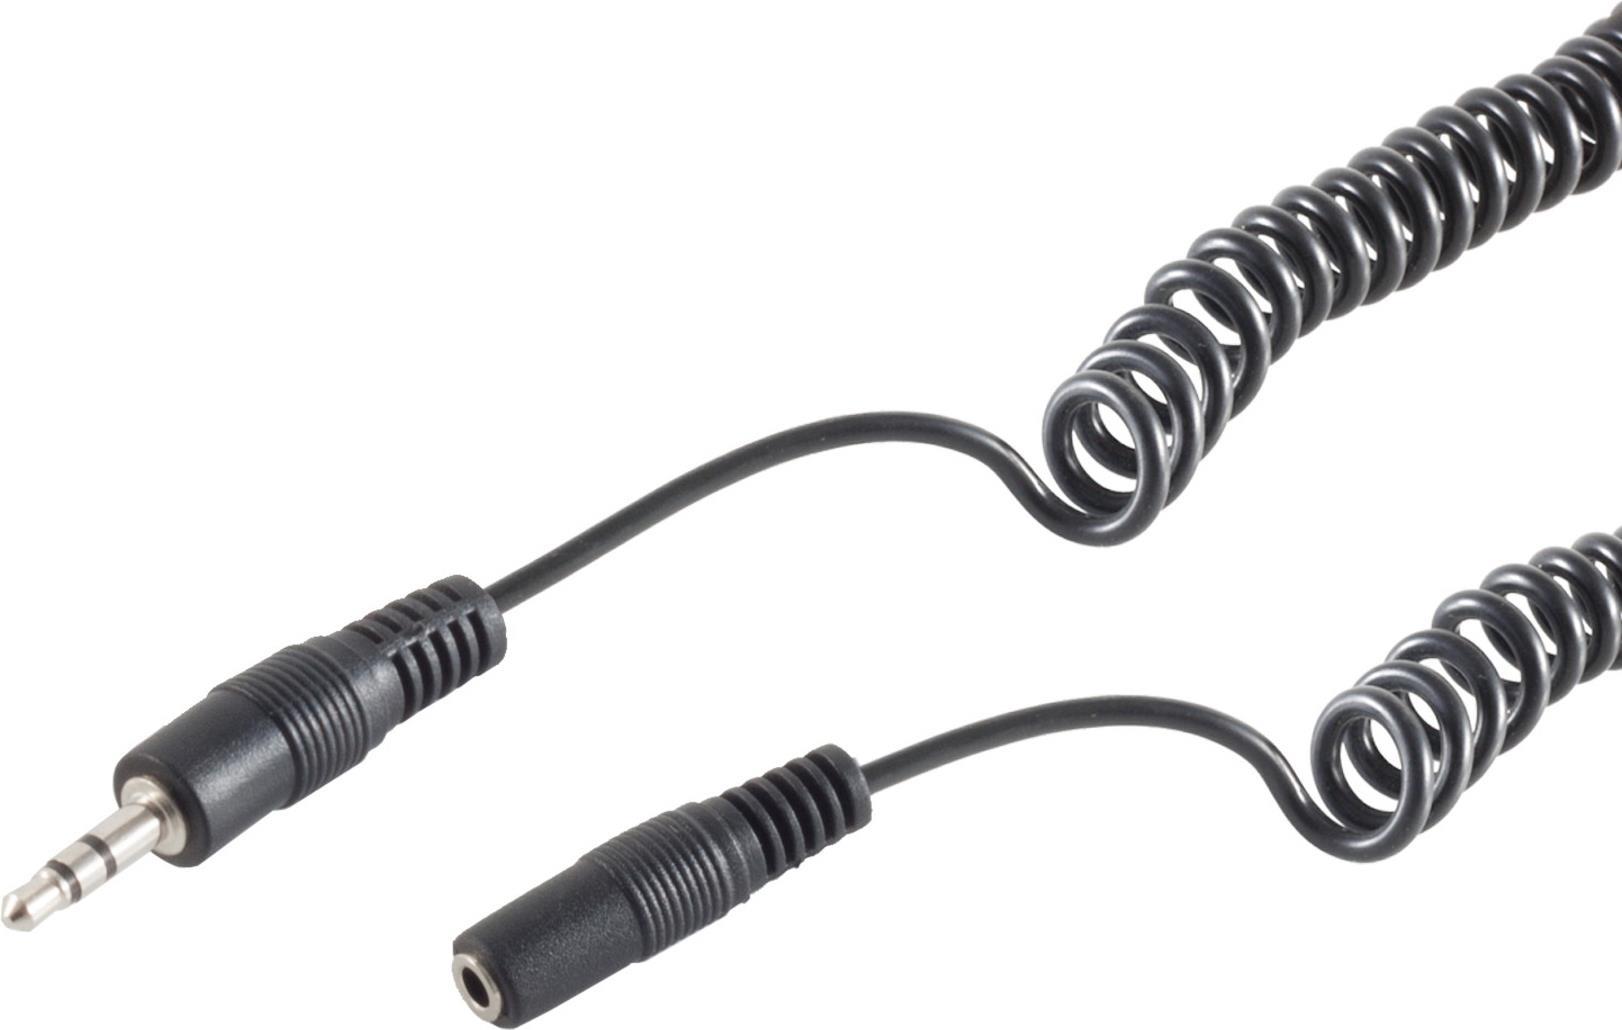 S/CONN maximum connectivity Klinken Kabel Verlängerung-Klinkenstecker 3,5mm Stereo auf Klinkenkupplung 3,5mm Stereo, Spiralkabel, 2,5m (30815-2.5)